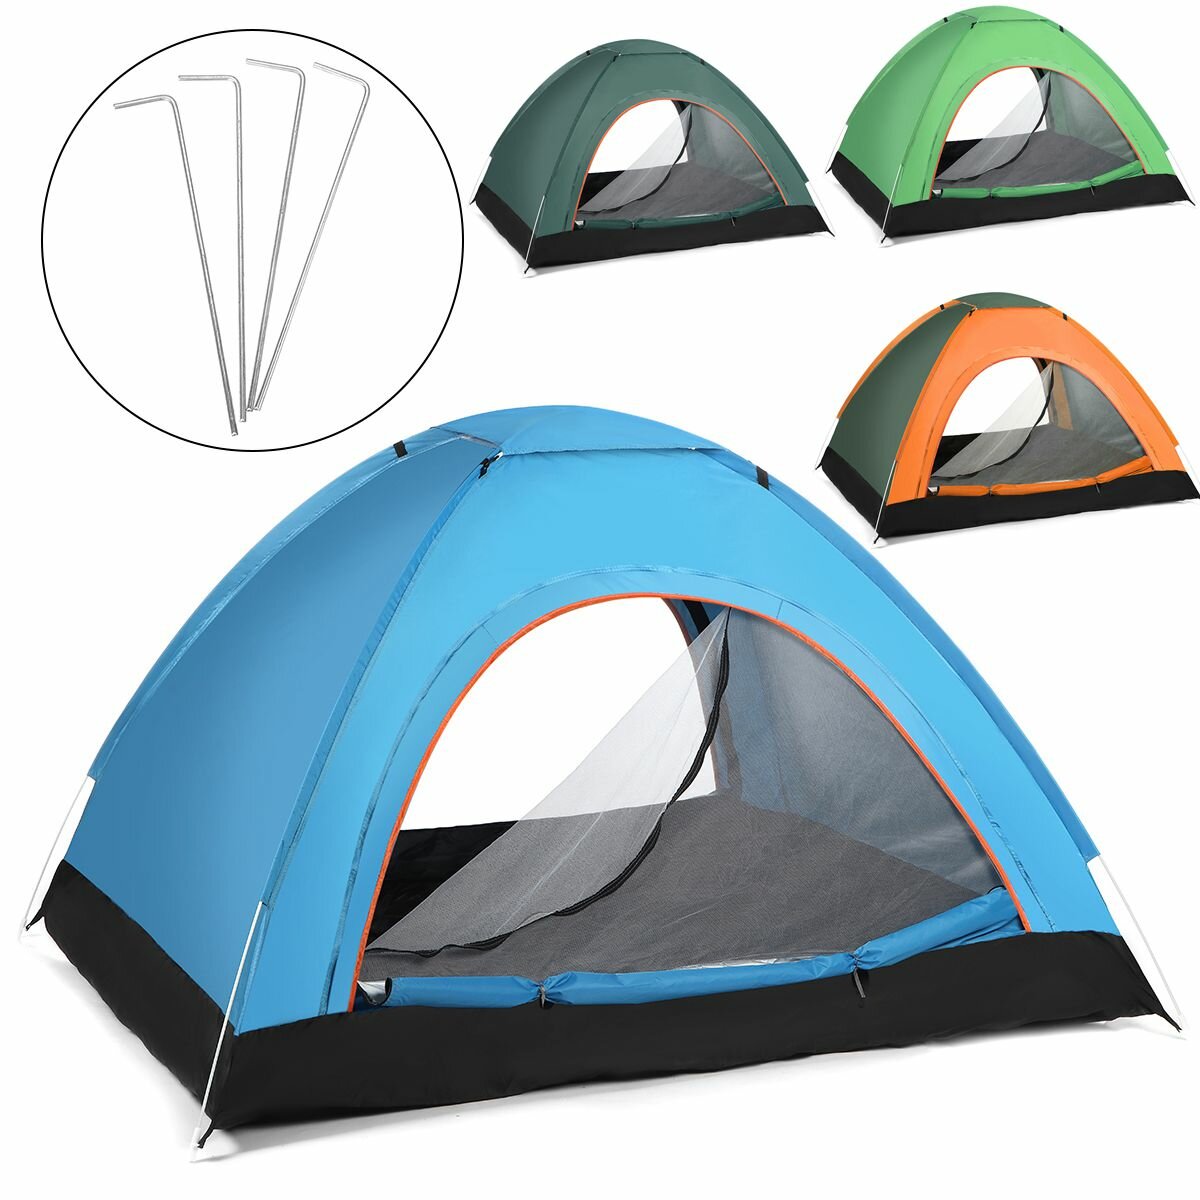 Volledig automatische anti-UV wind- en waterdichte campingtent voor 2-3 personen voor buitenreizen, wandelen en strand.